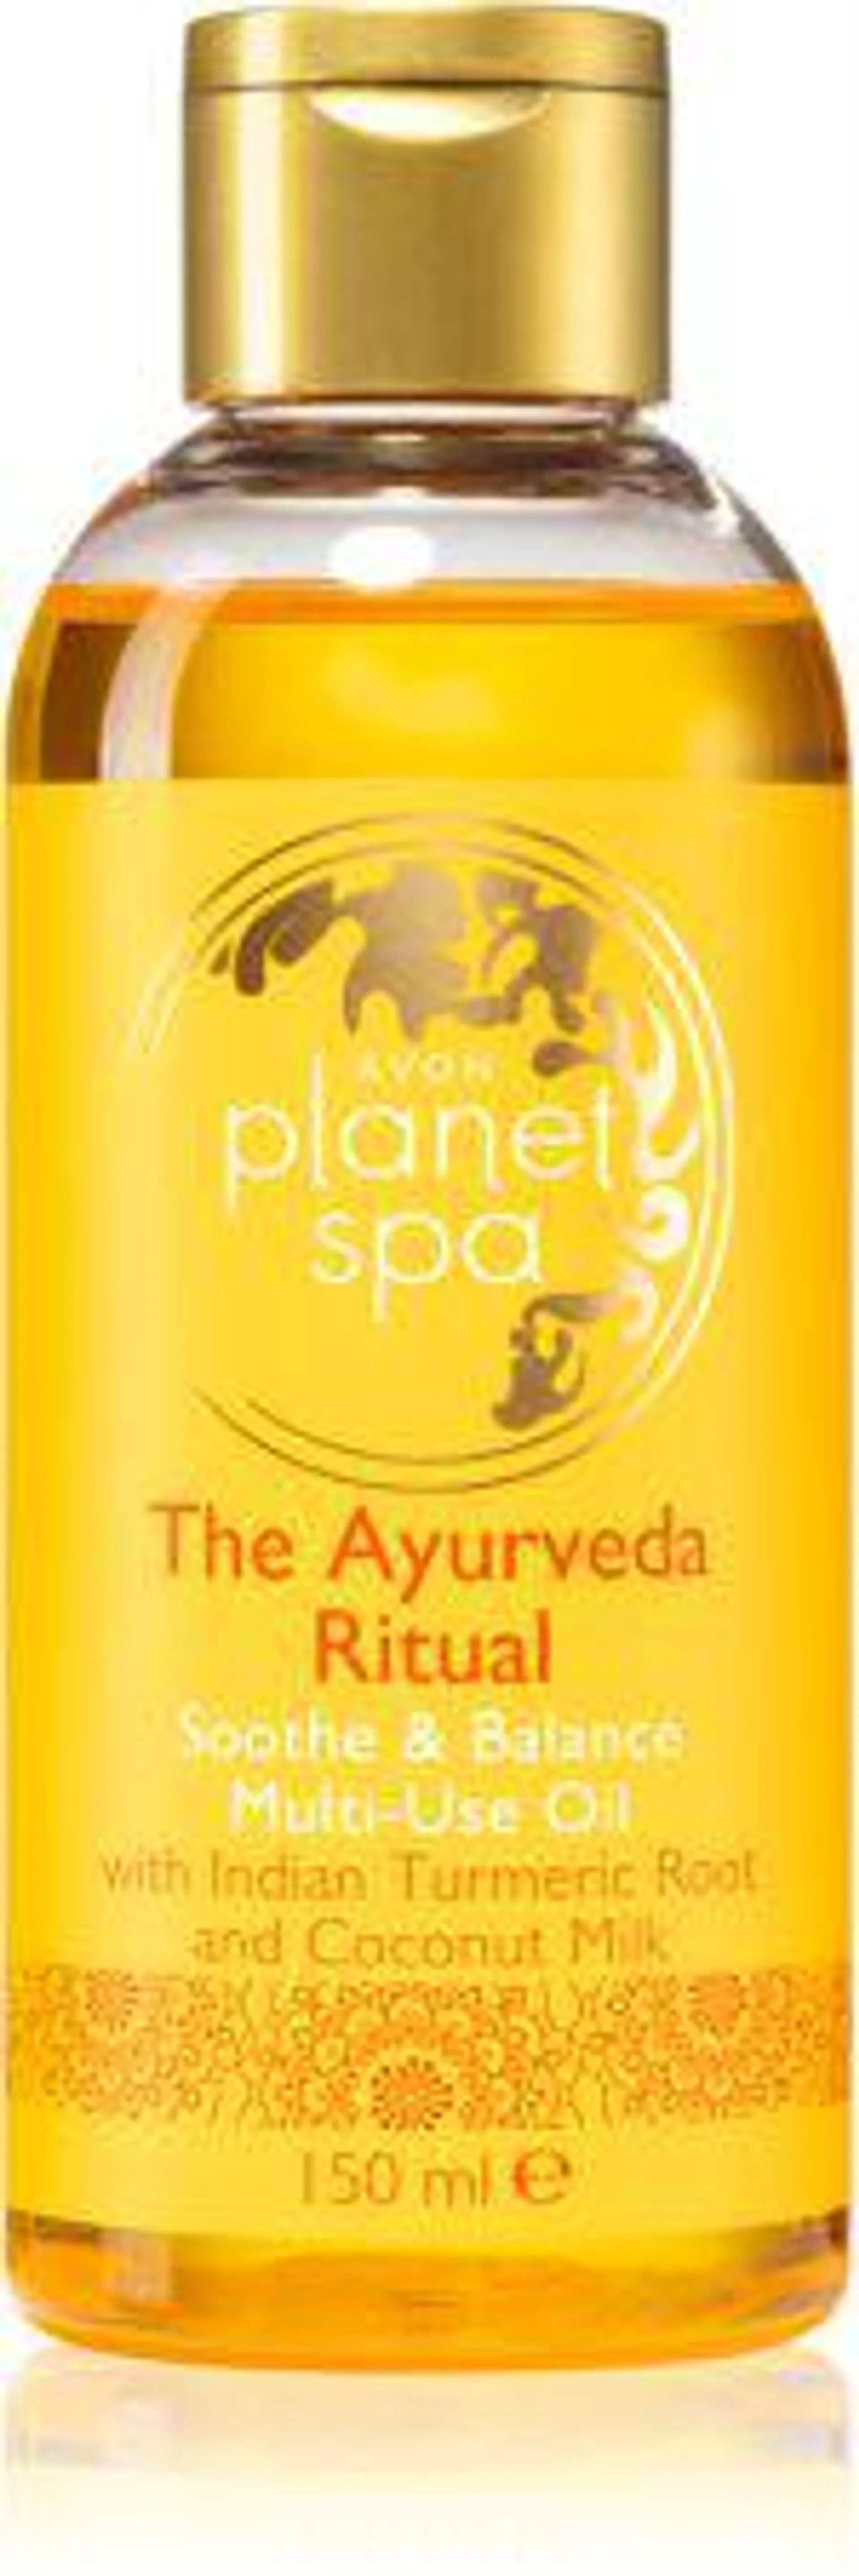 Planet Spa The Ayurveda Ritual